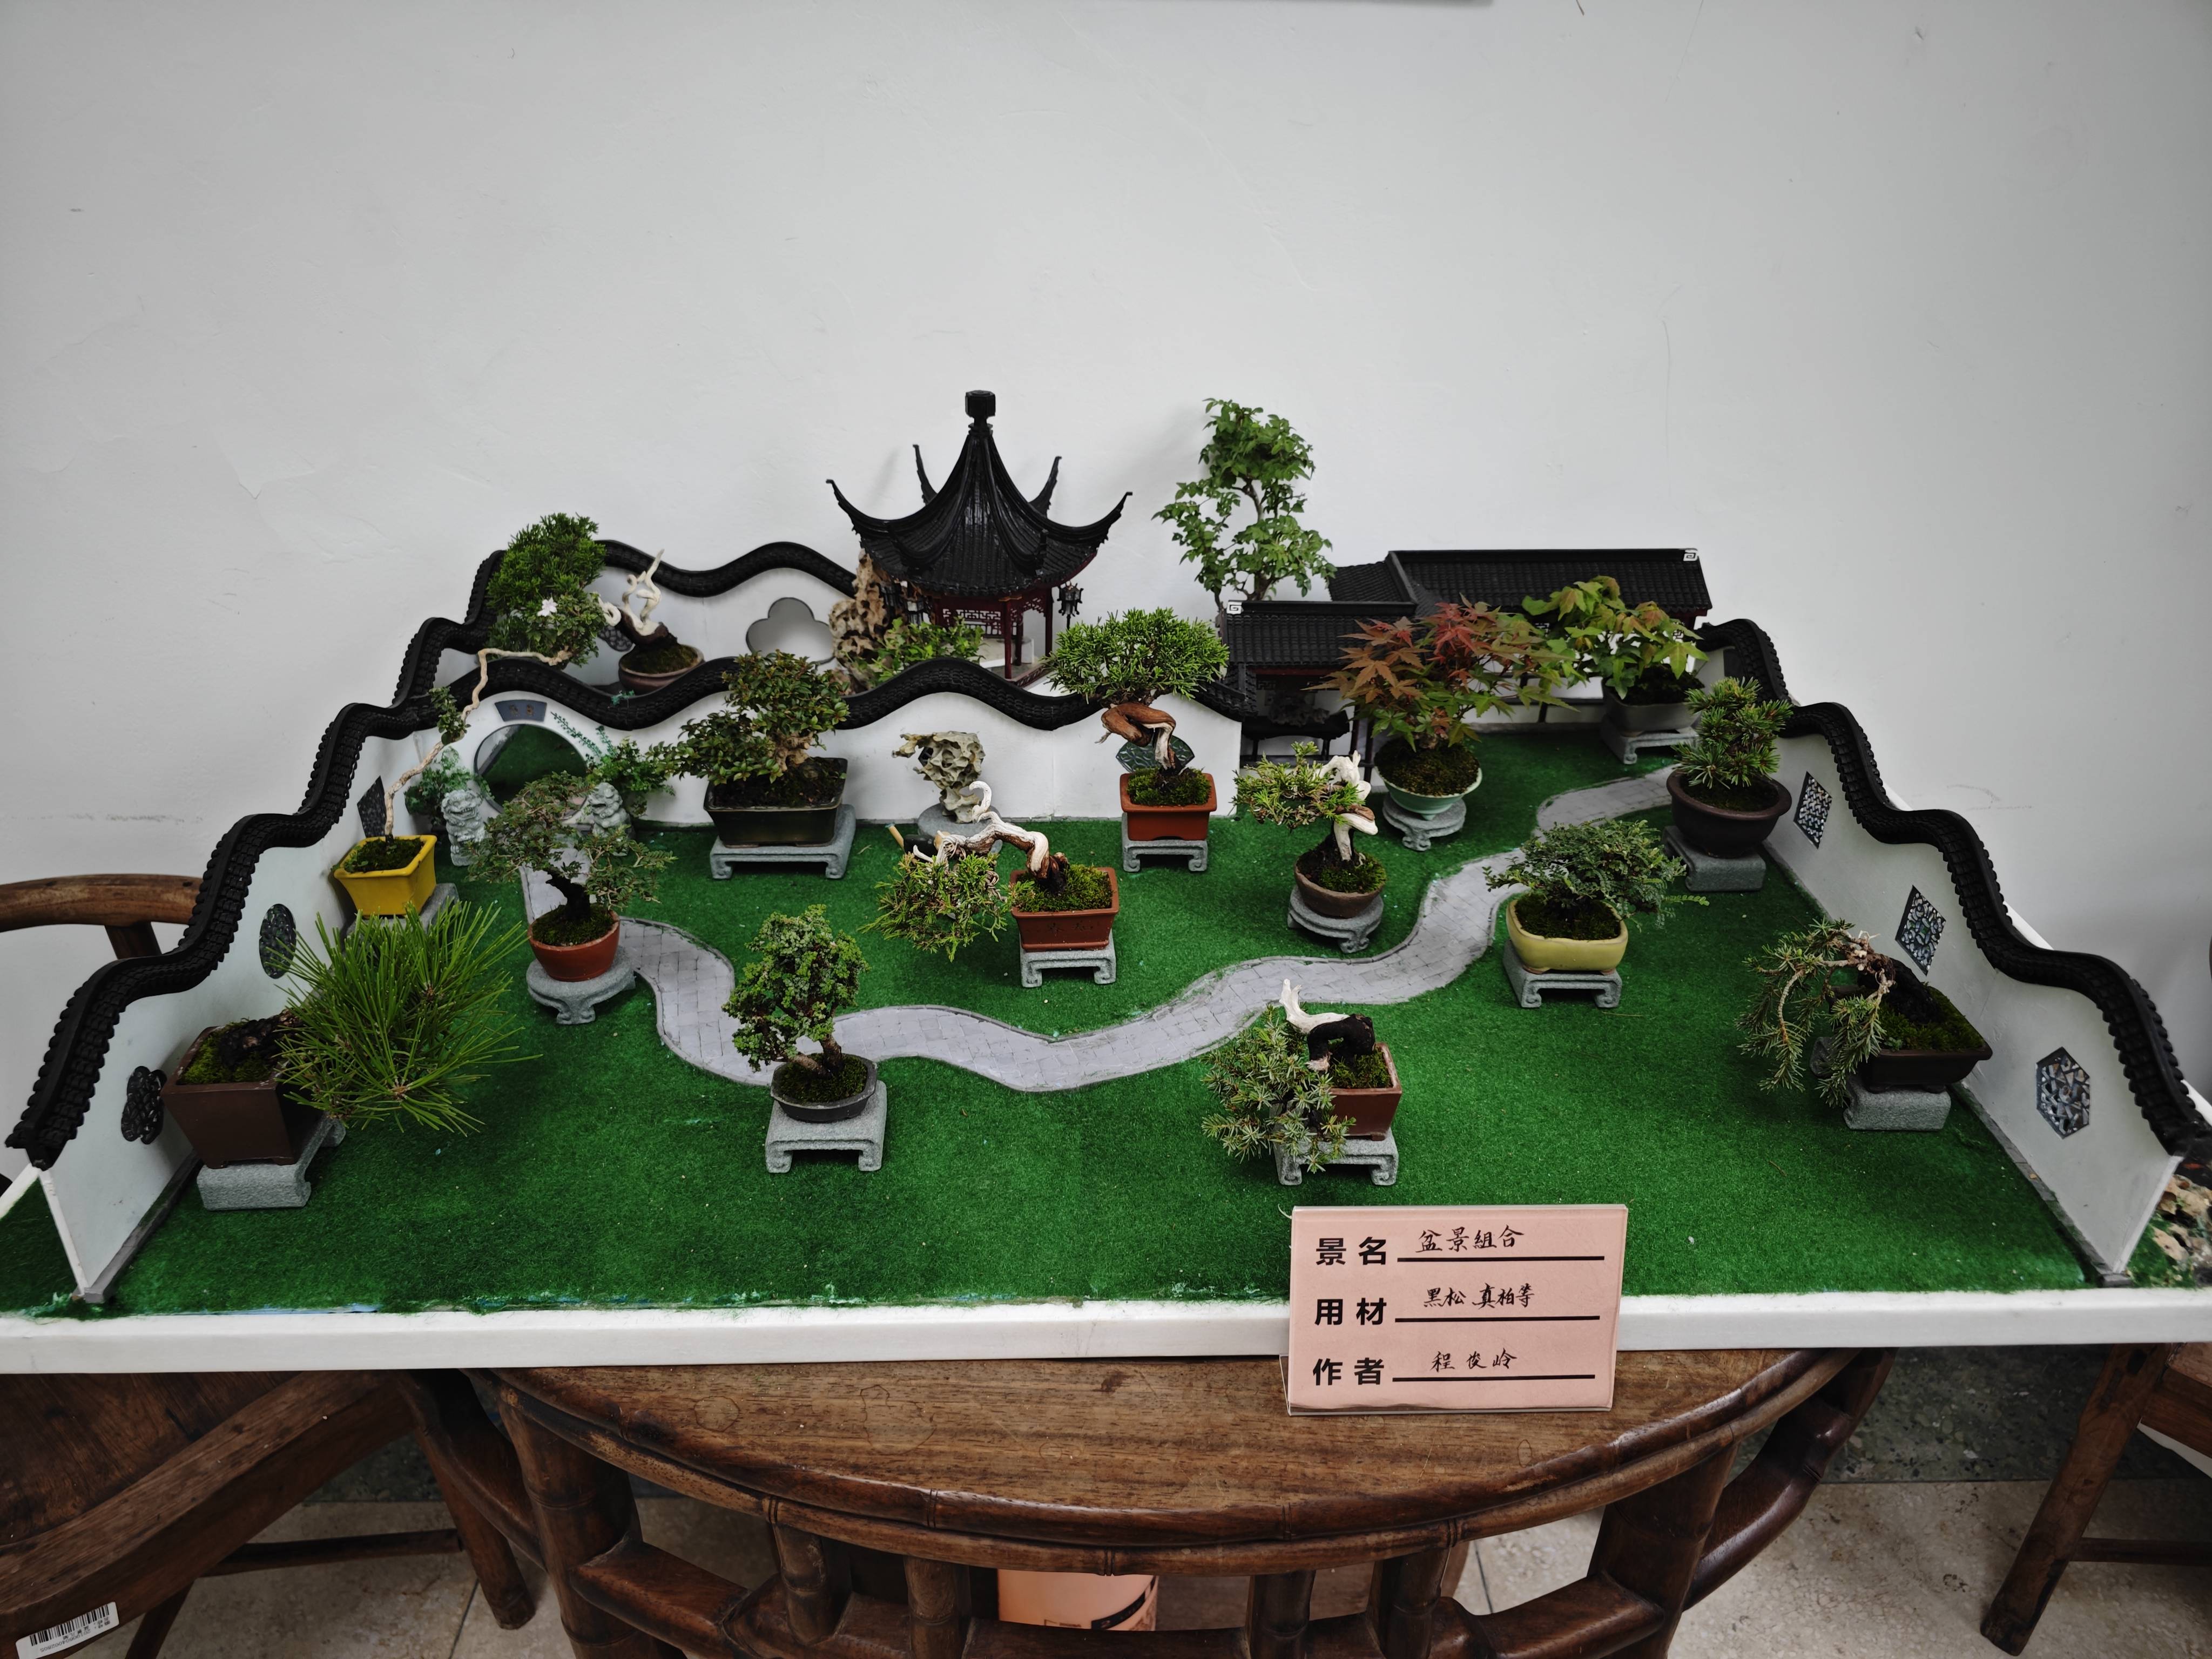 天津市花卉盆景协会《天津市盆景艺术精品展》在水上公园盆景园揭幕